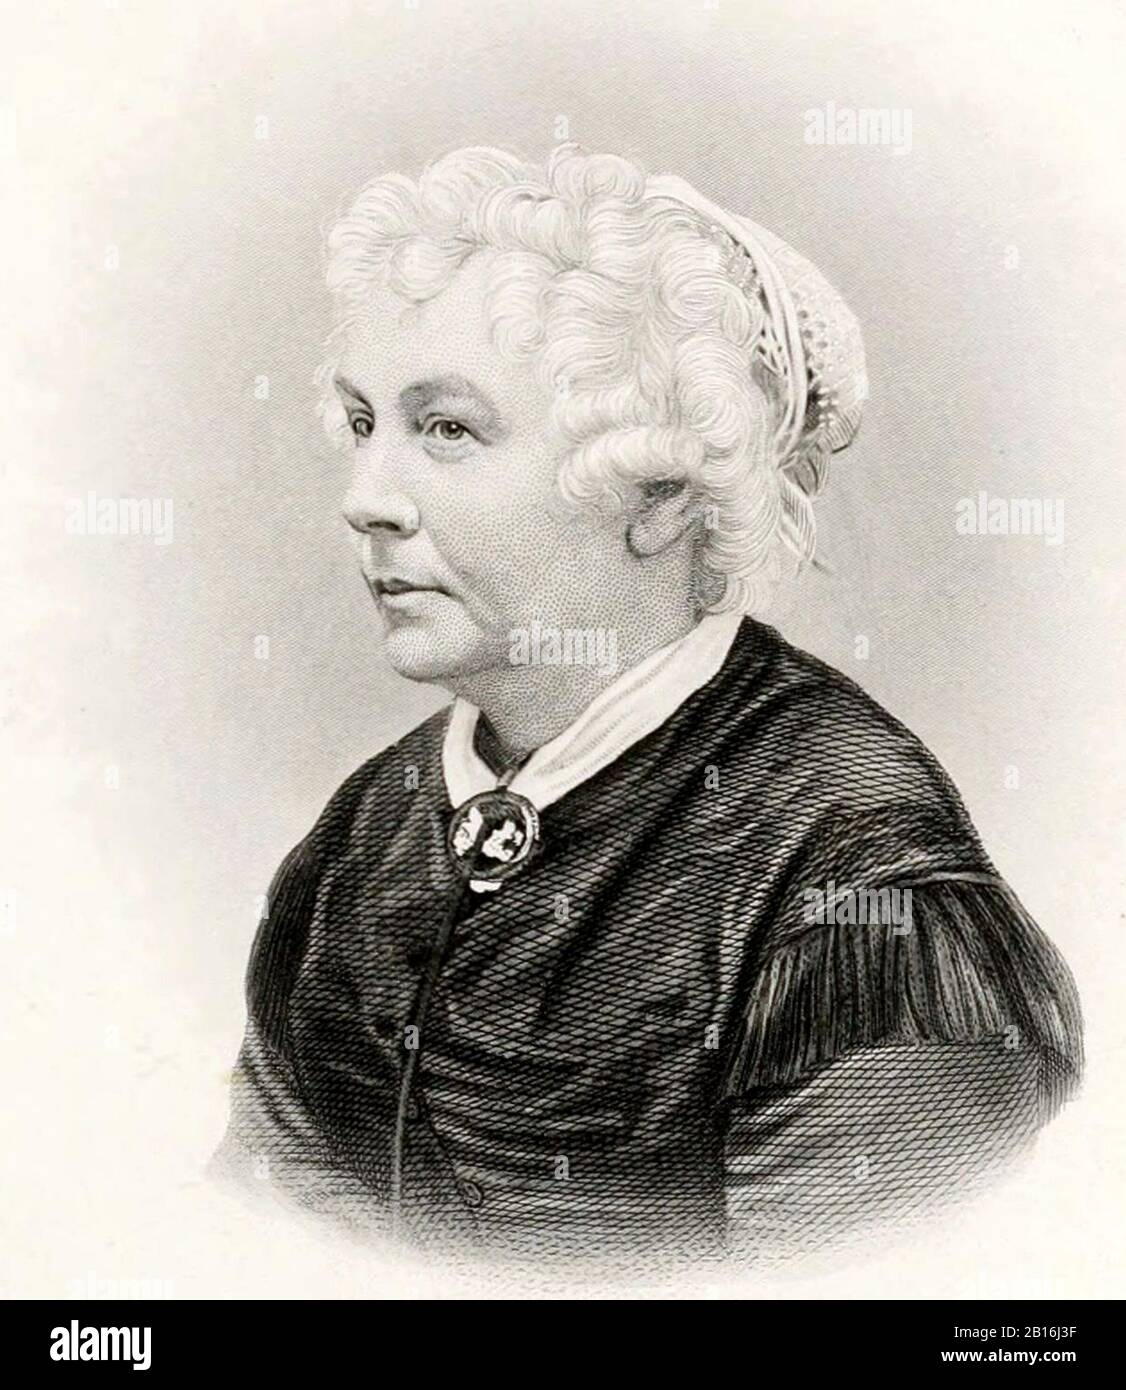 Elizabeth Cady Stanton (1815 – 1902) suffraganea americana, attivista sociale, abolizionista e figura di spicco del movimento per i diritti delle prime donne. Foto Stock